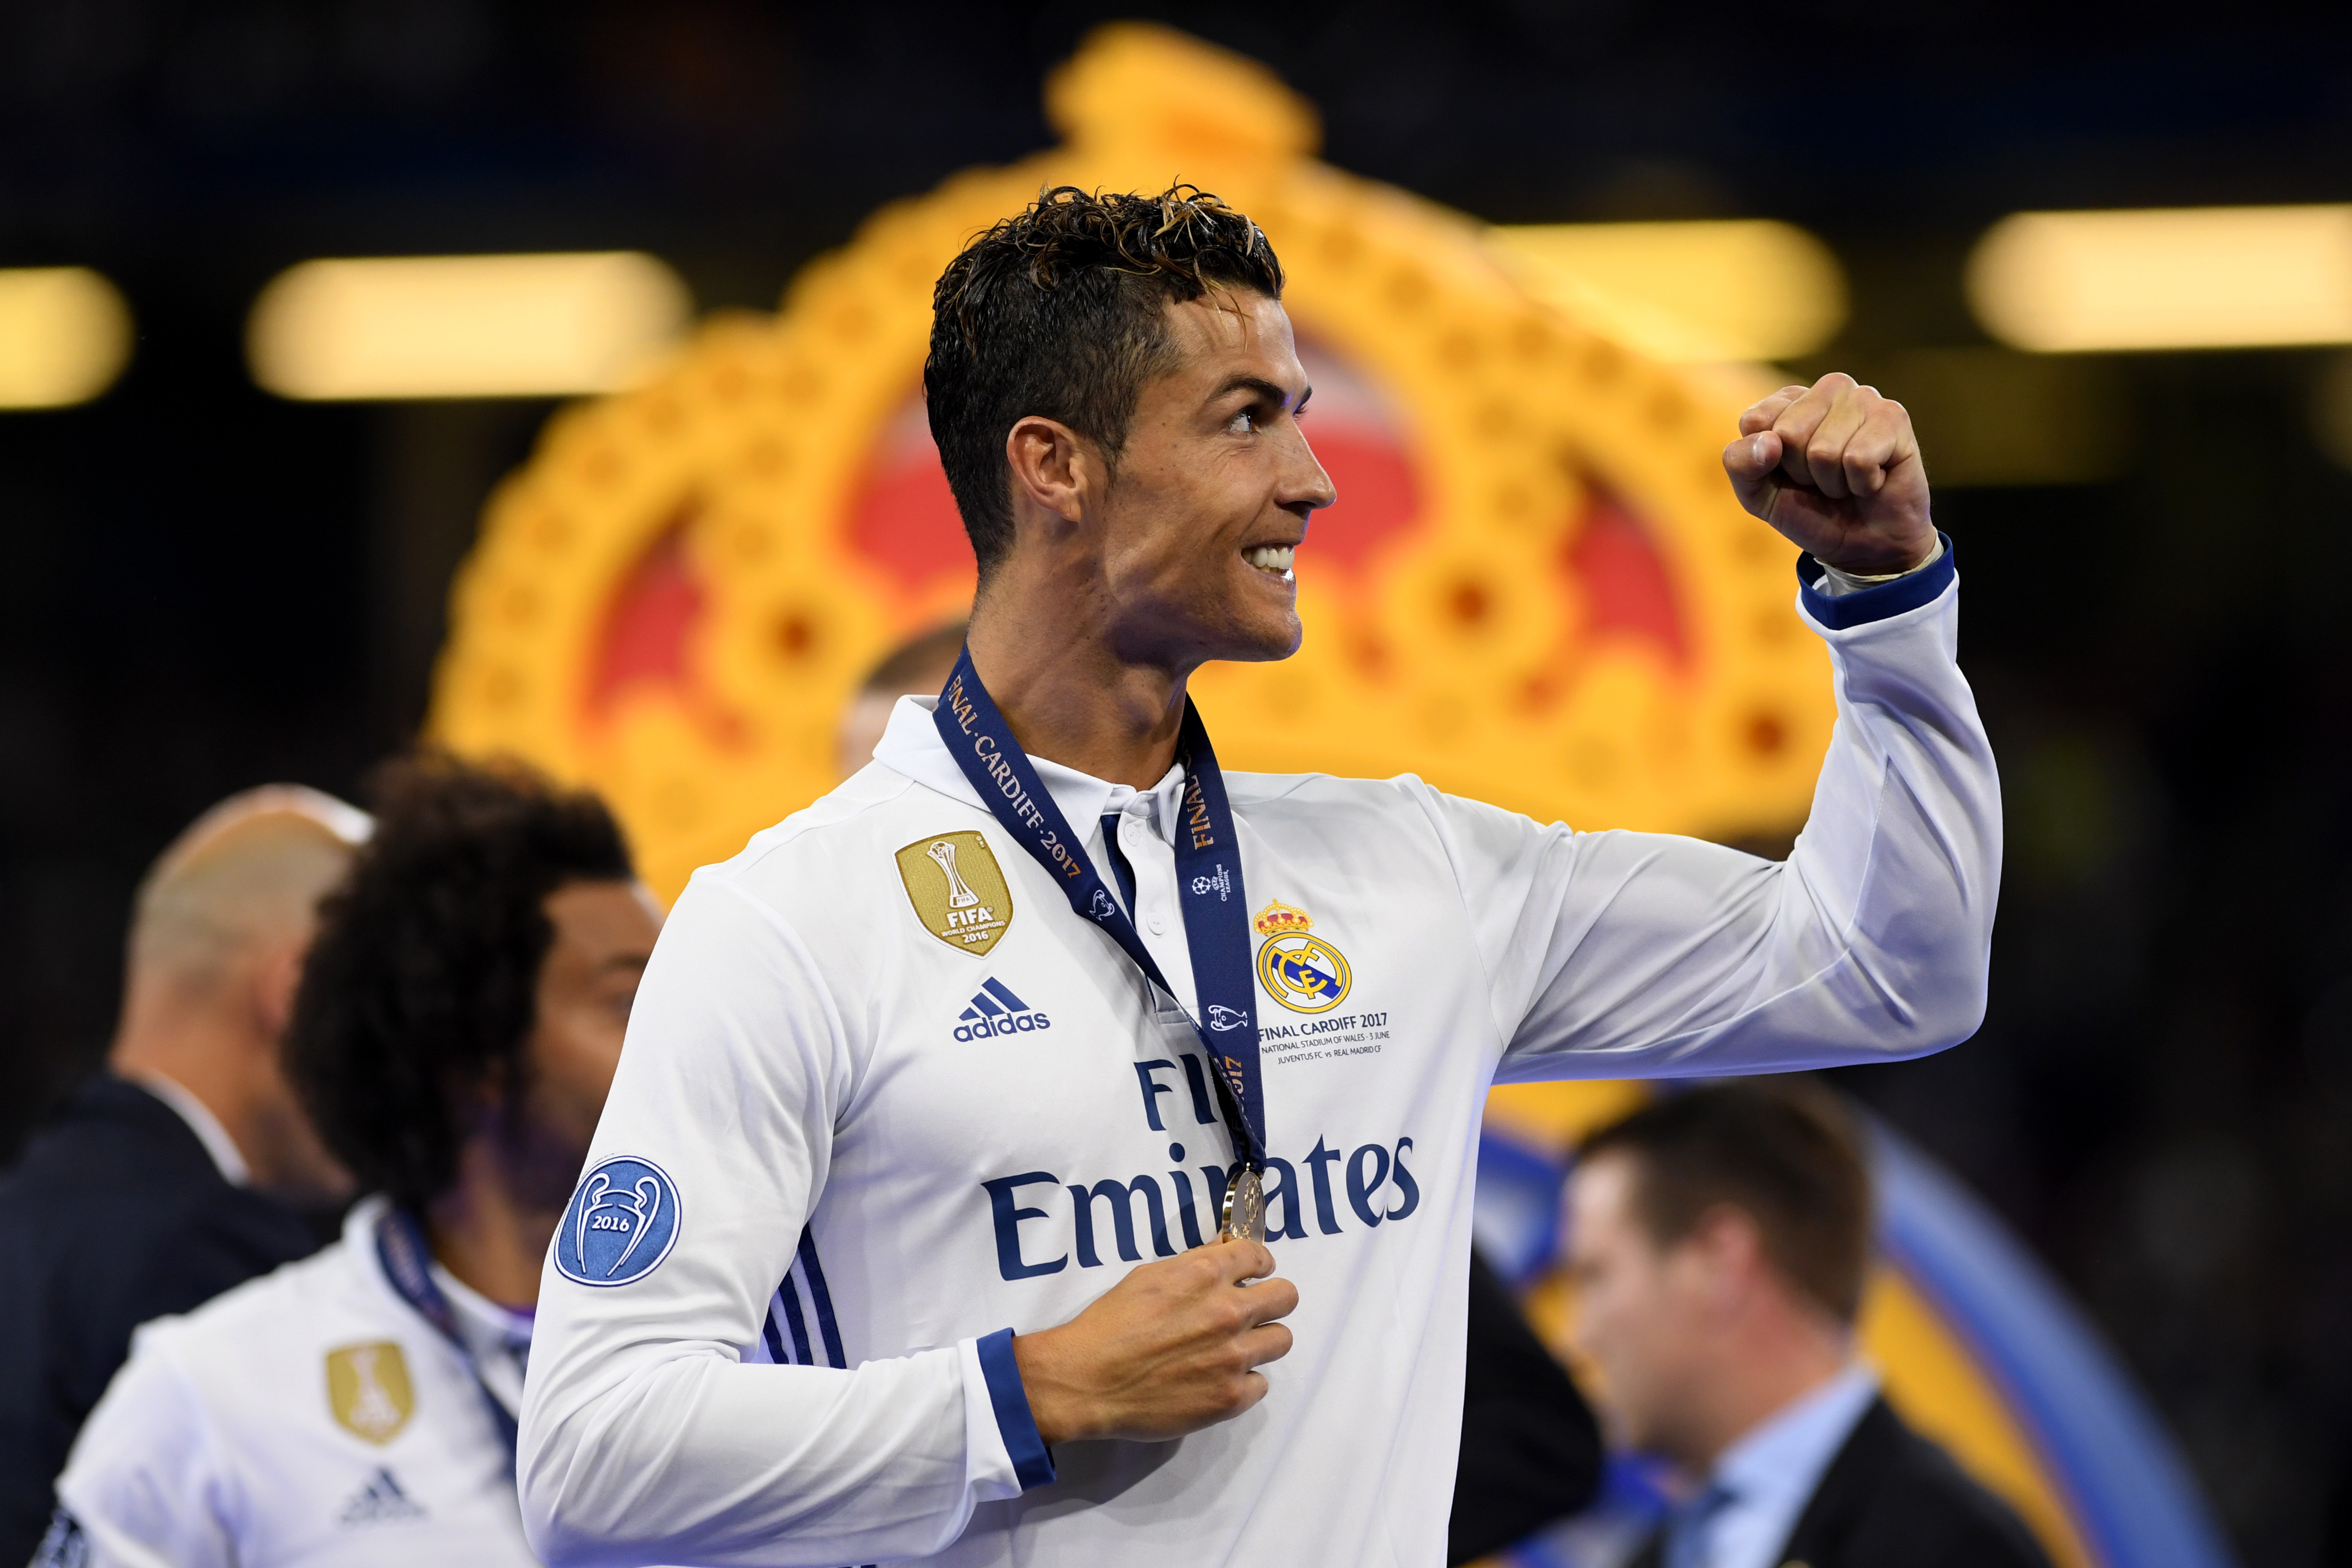 Cristiano Ronaldo v Sea The Stars - who's the real stud